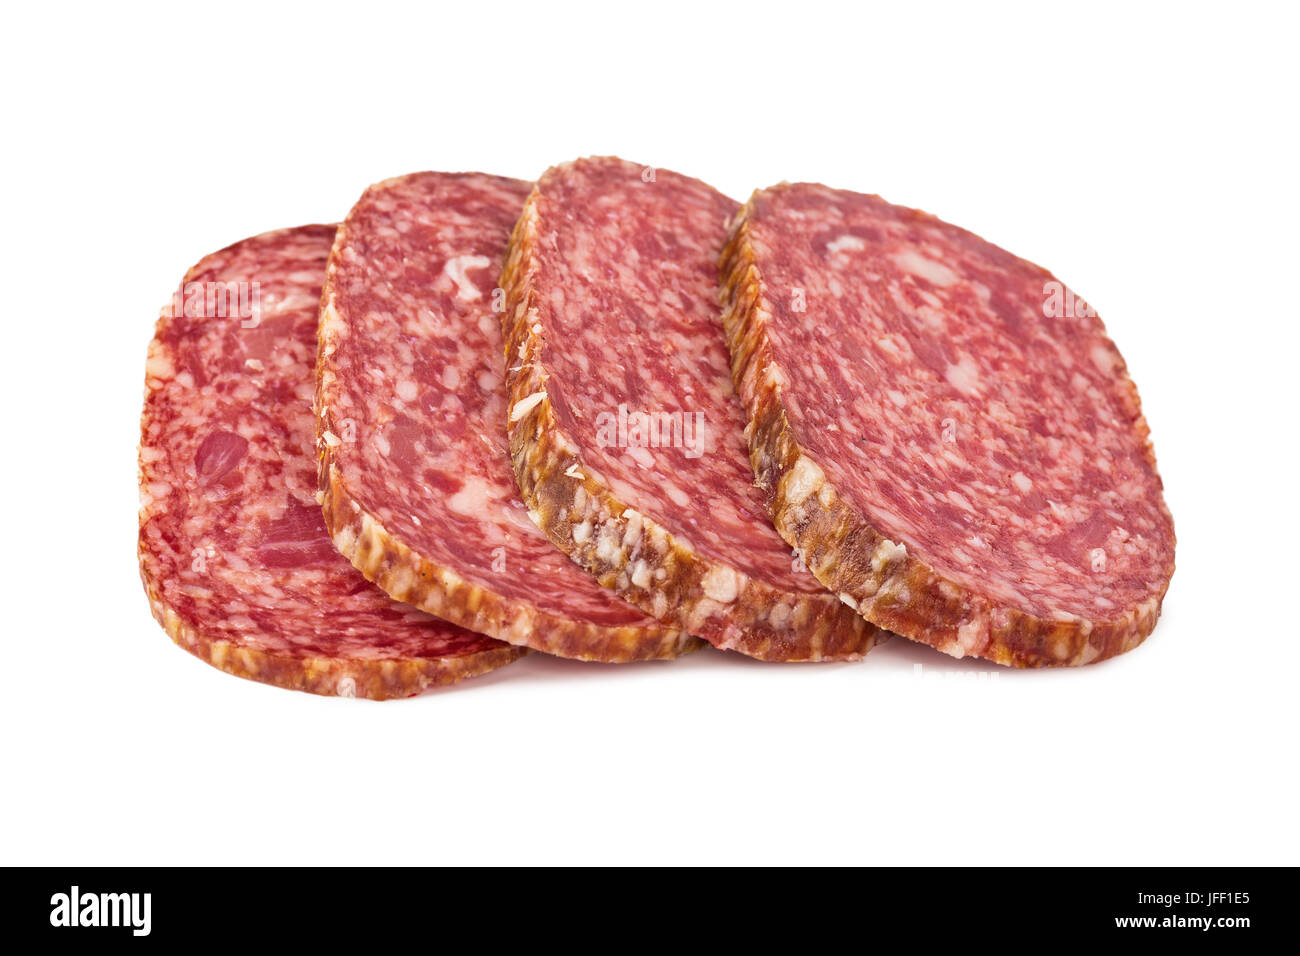 Sliced sausage Stock Photo